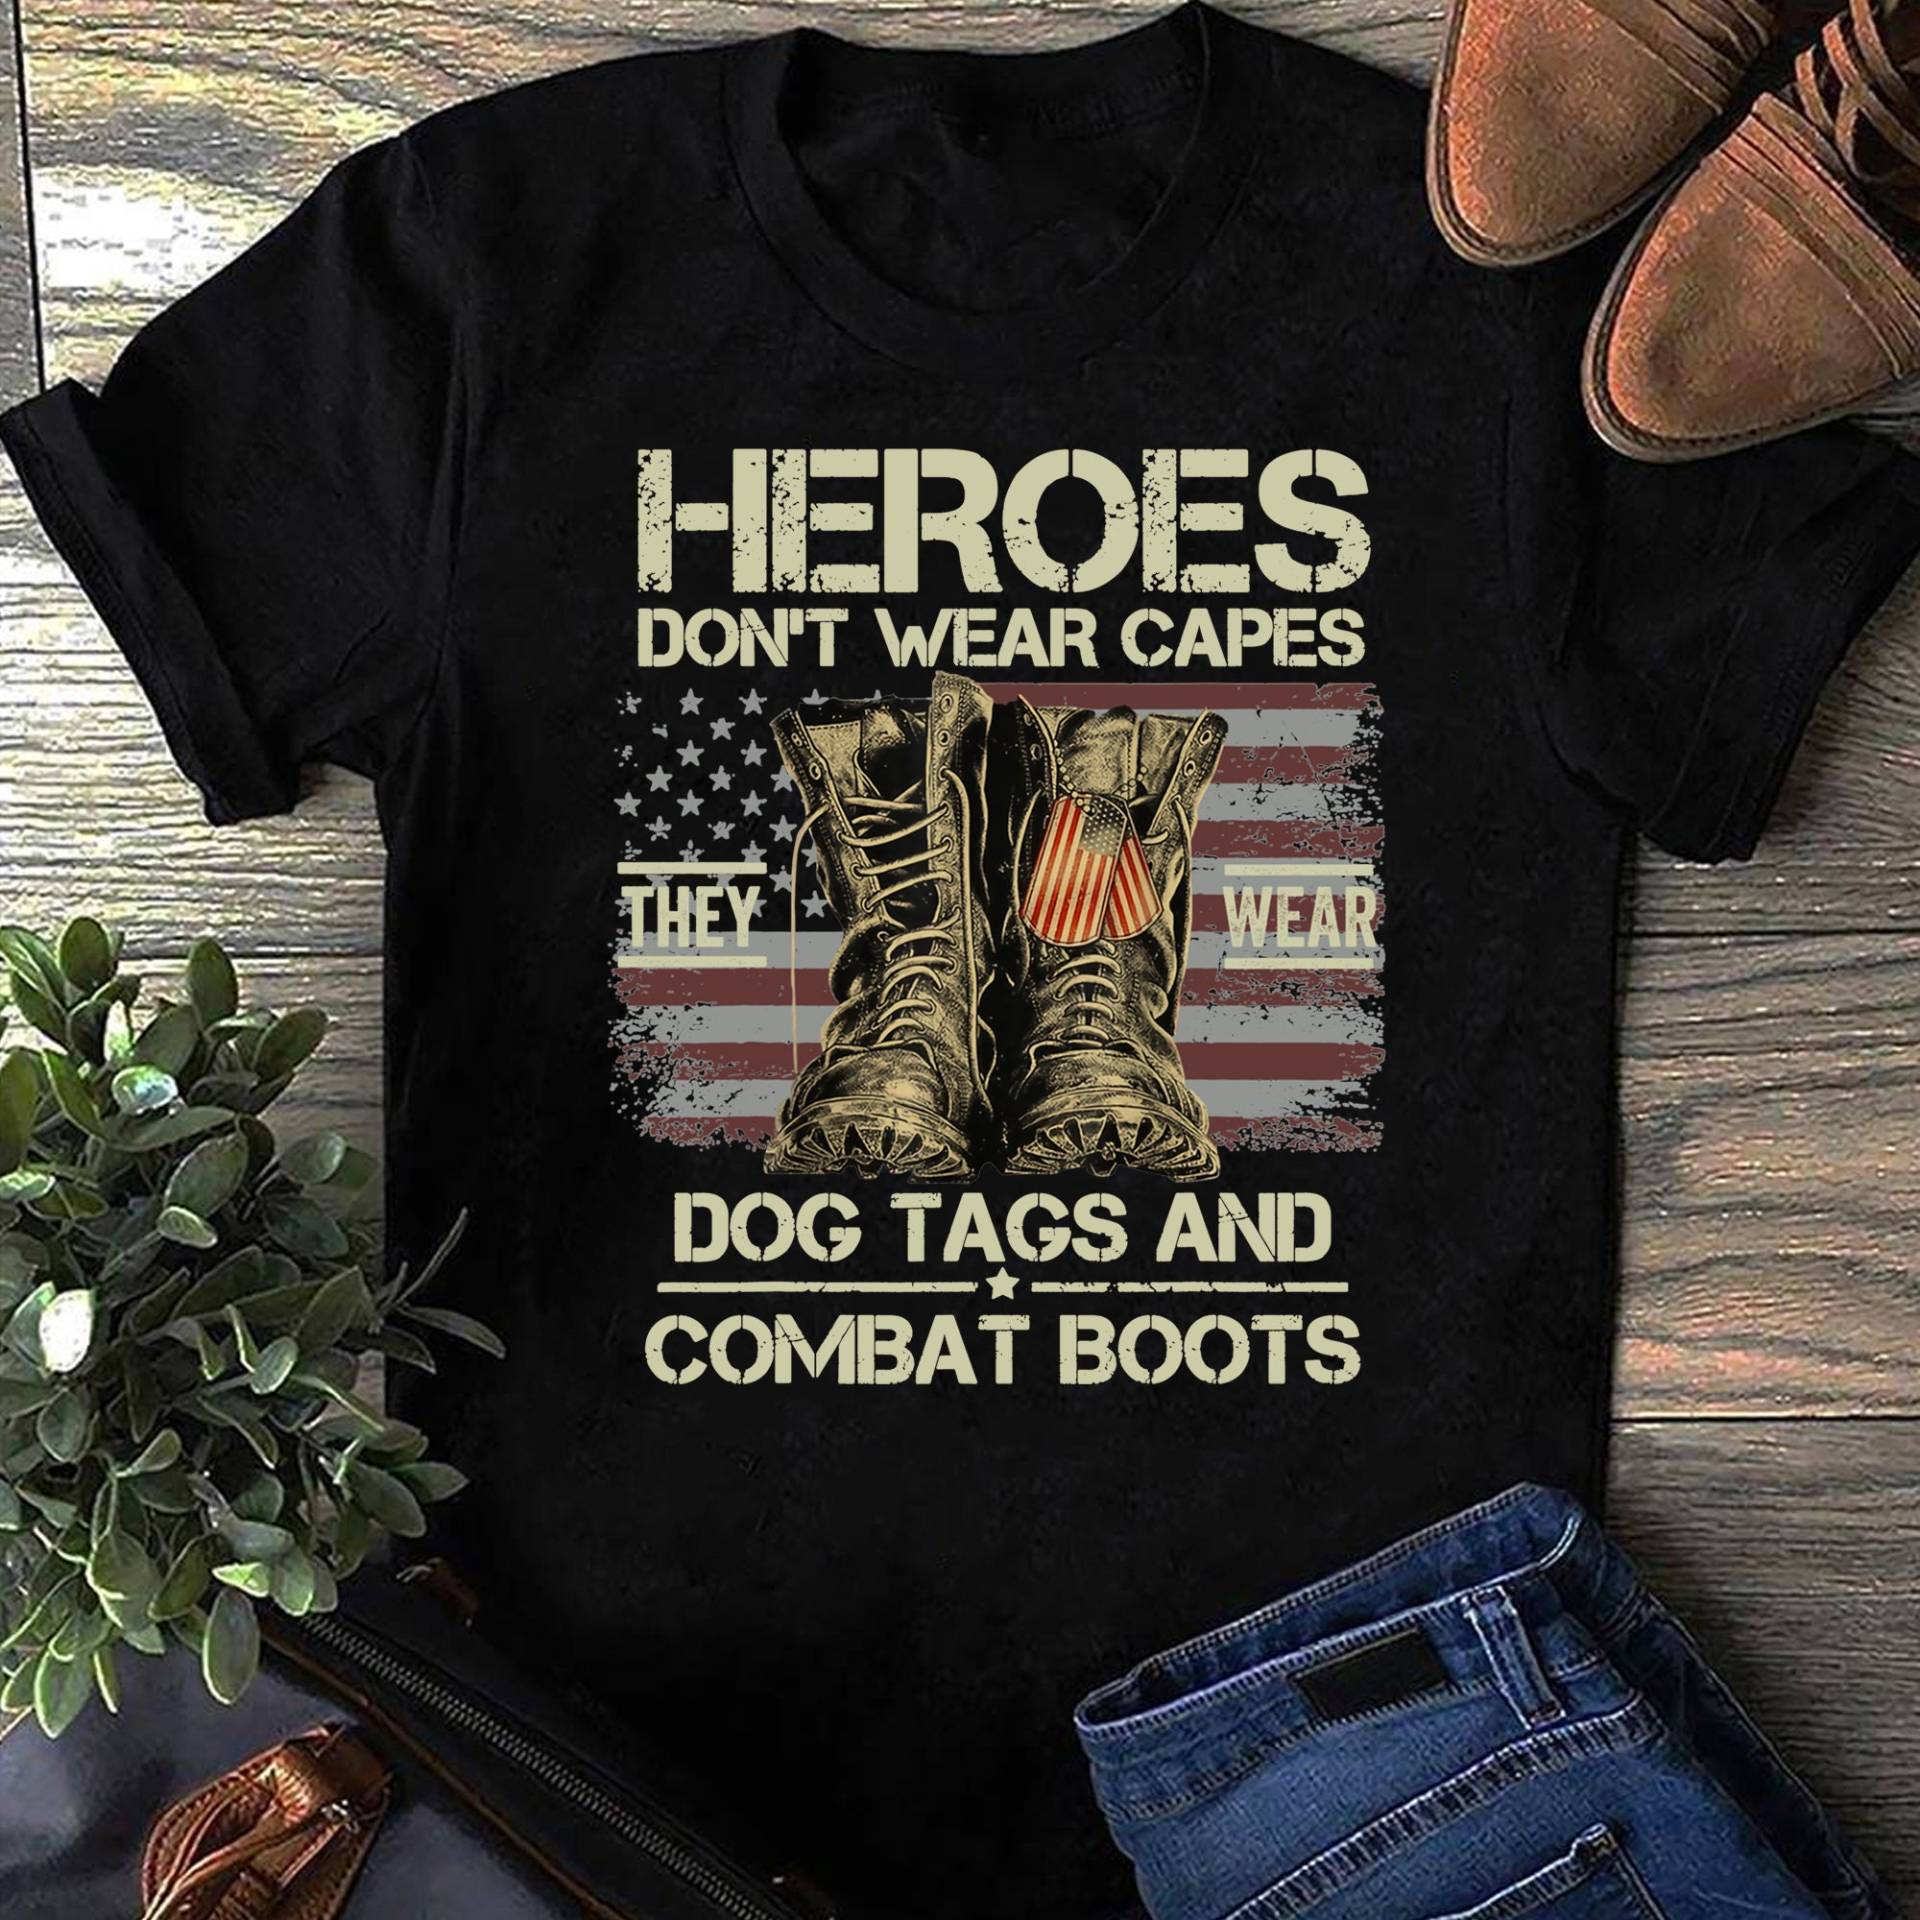 Helden Tragen Keine Capes, Sie Hundeanhänger & Kampfstiefel T-Shirt- Geschenk Für Hundeliebhaber - Lustiger Hund Muttertag von LeonaTee